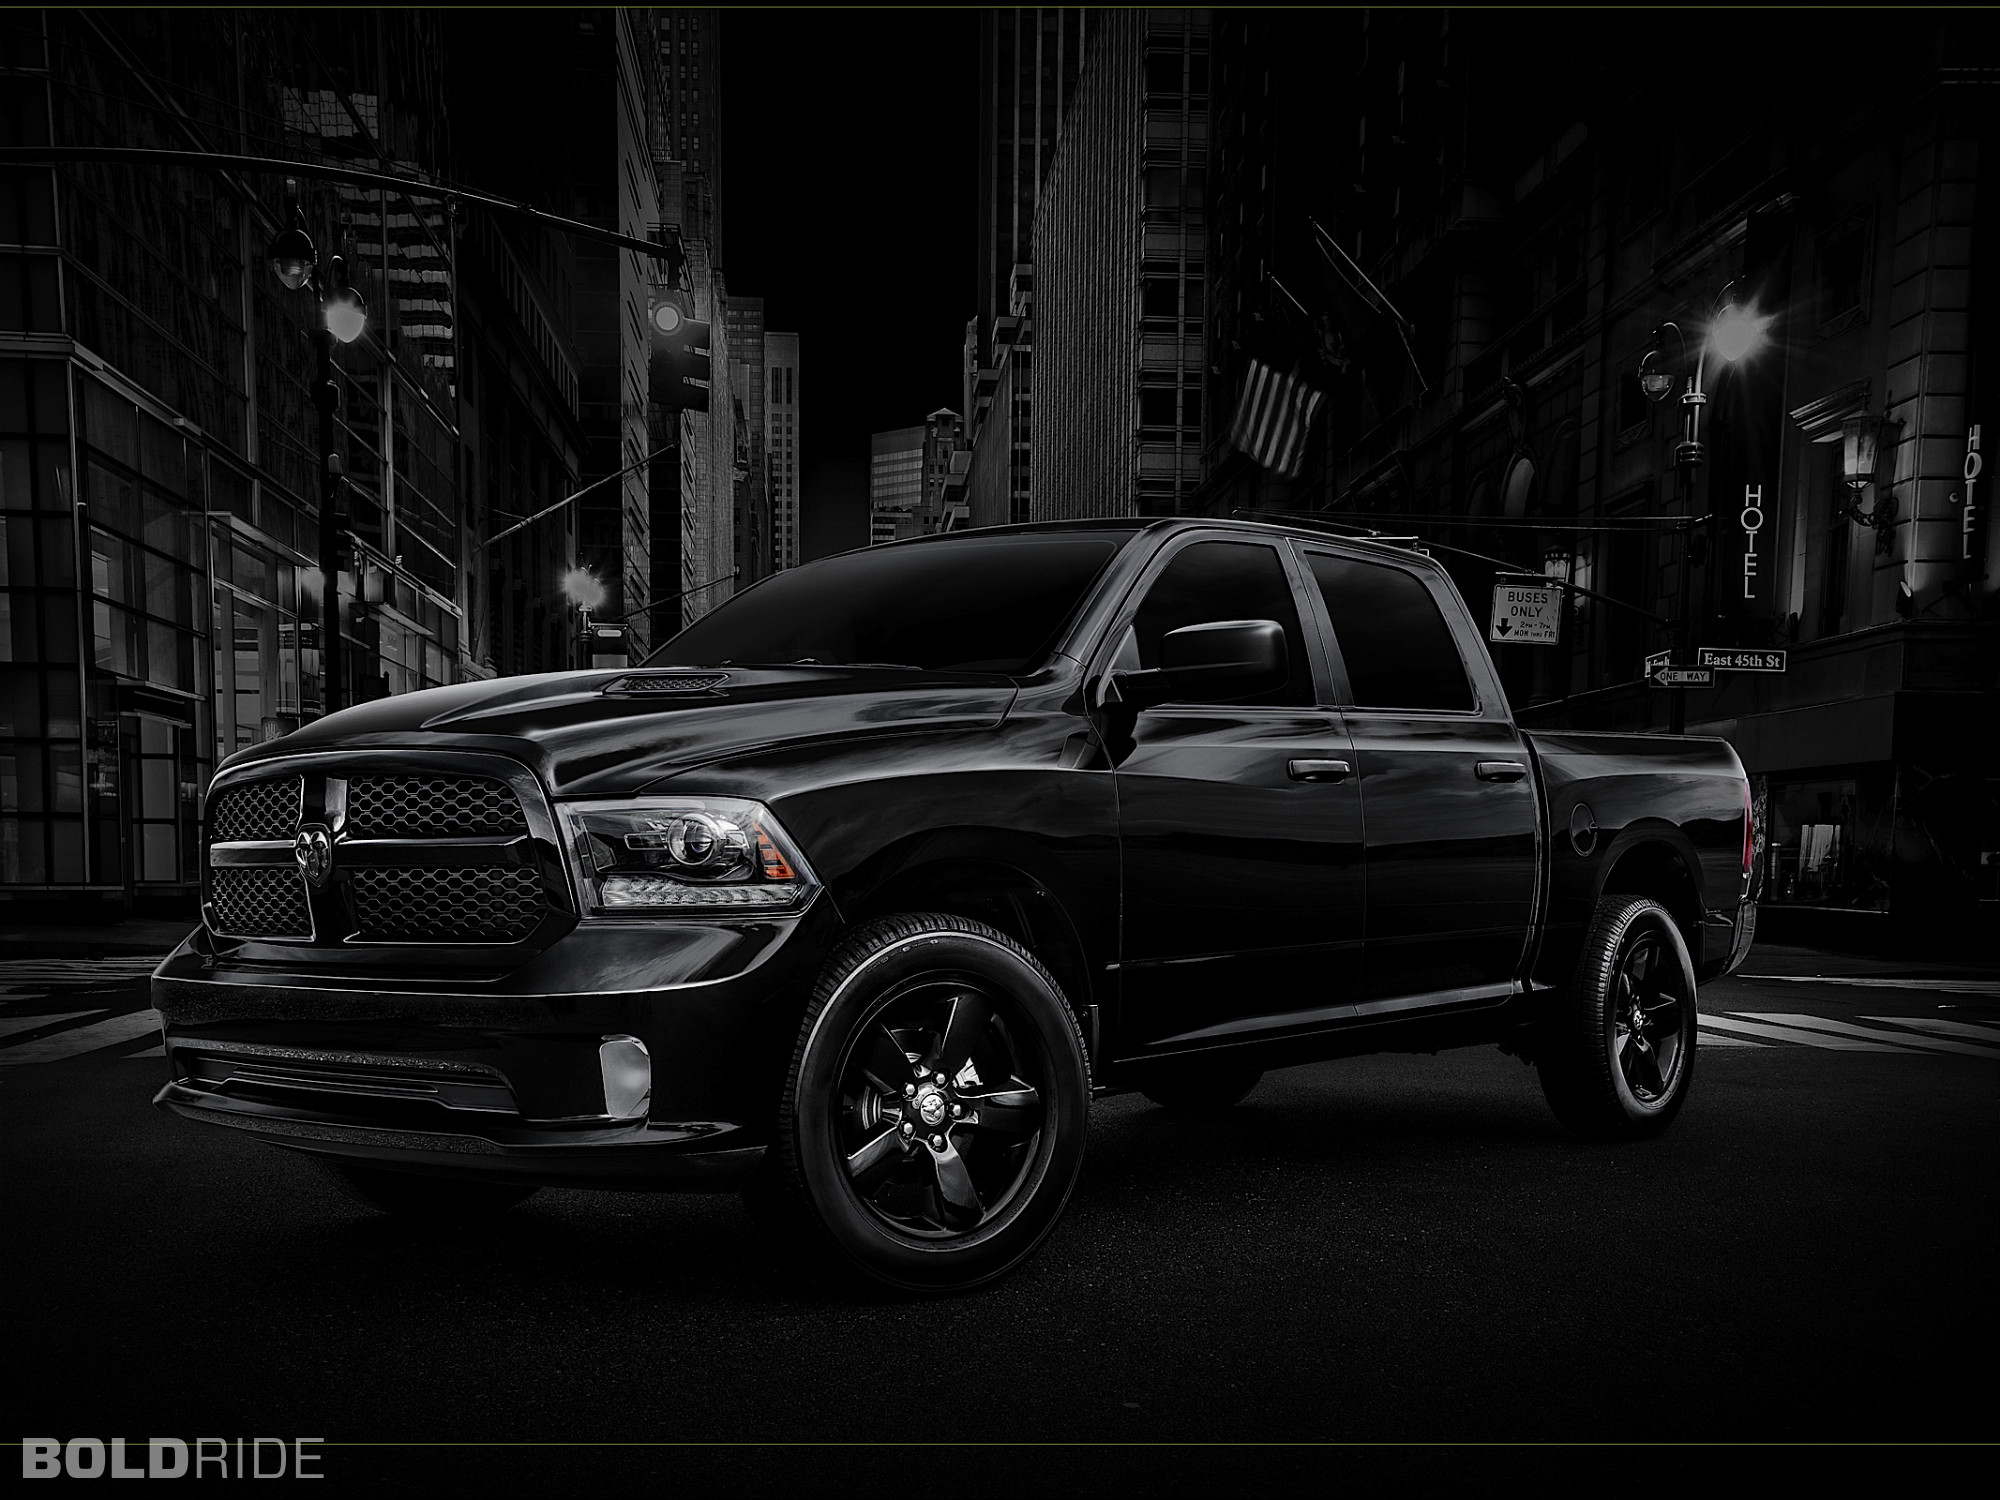 2000x1500 Black Dodge Ram 1500 HD Wallpaper | Hintergrund |  | ID:881686 -  Wallpaper Abyss